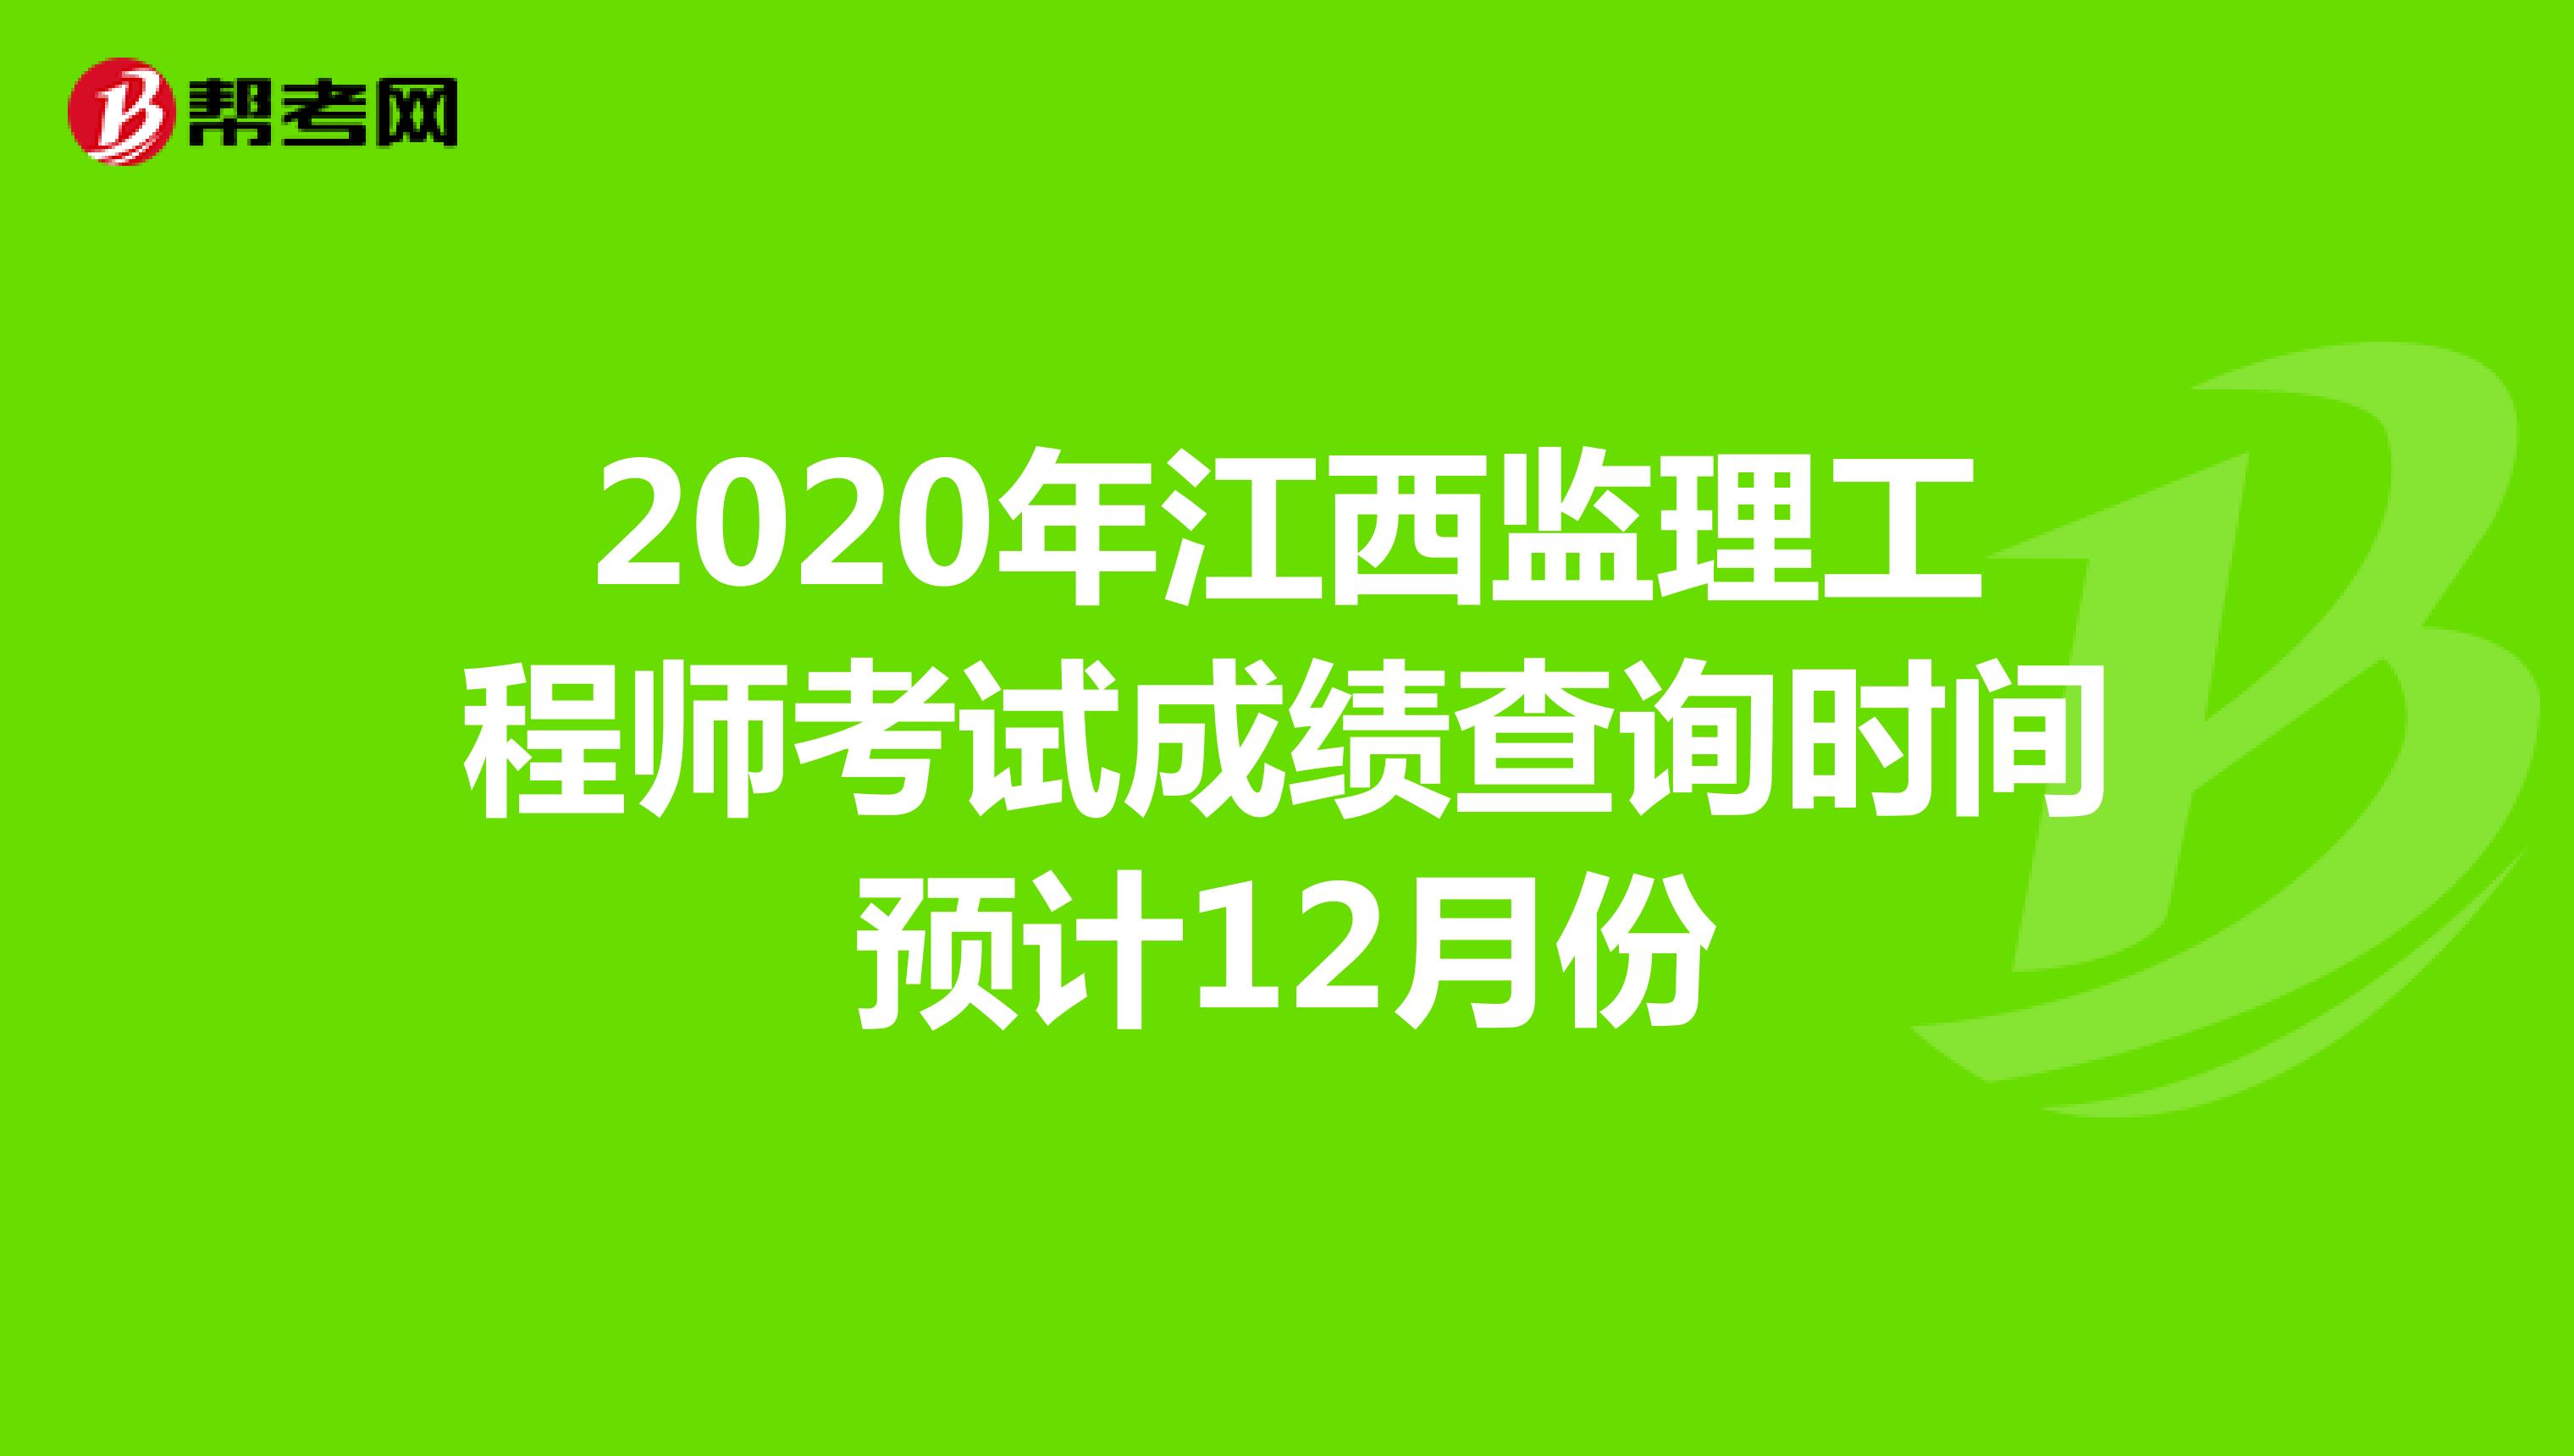 2020年江西监理工程师考试成绩查询时间预计12月份